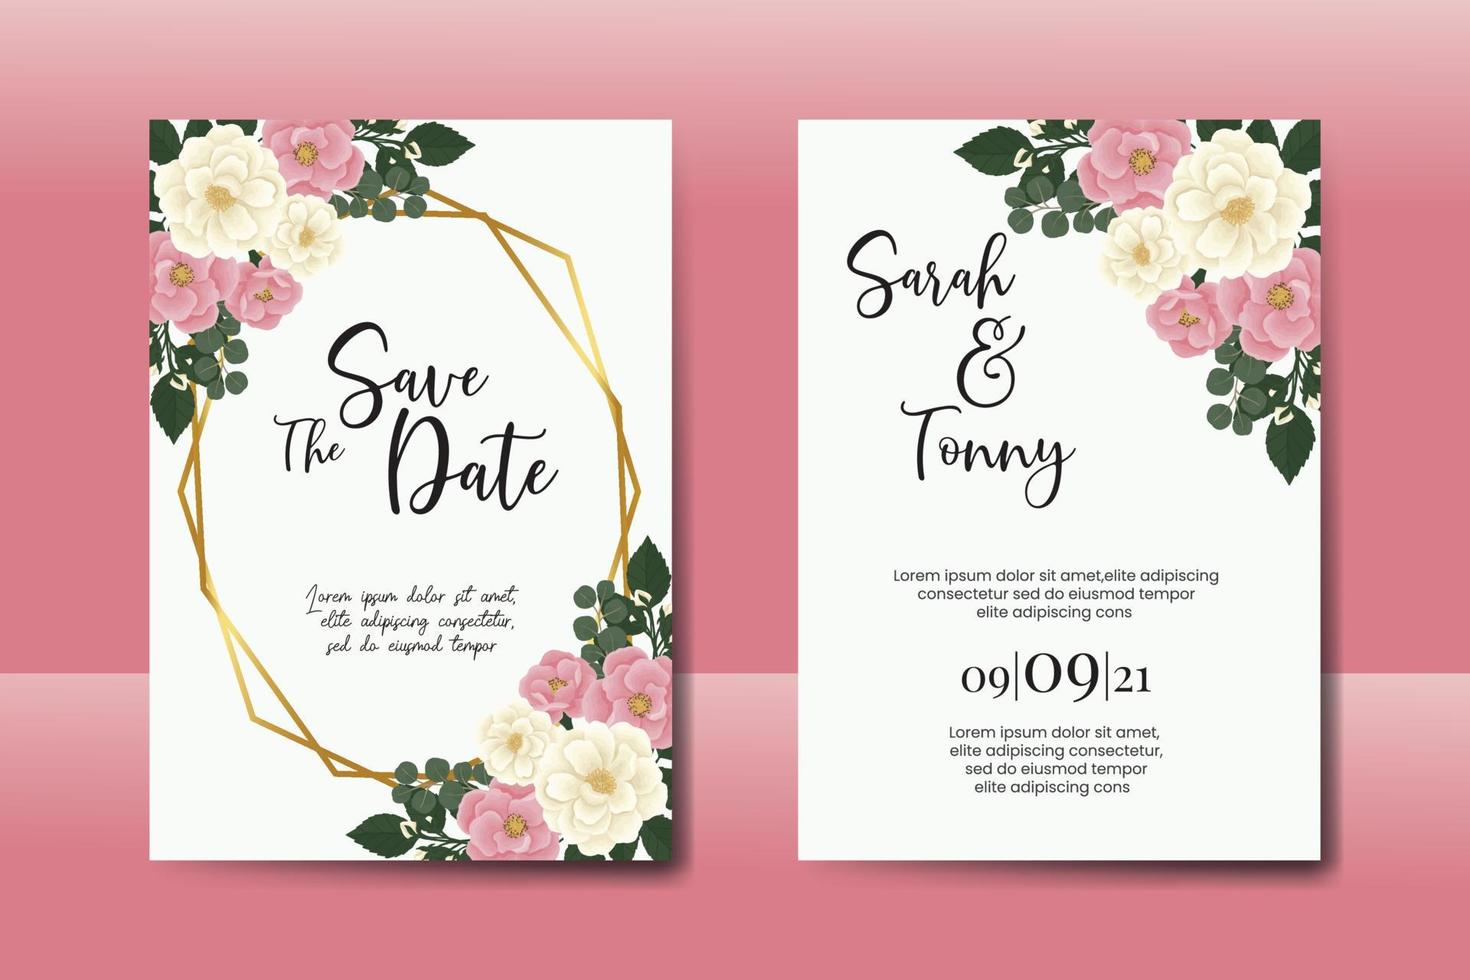 Hochzeitseinladungs-Rahmen-Set, Blumenaquarell digitale handgezeichnete rosa Mini-Rosen-Blumen-Design-Einladungskarten-Vorlage vektor